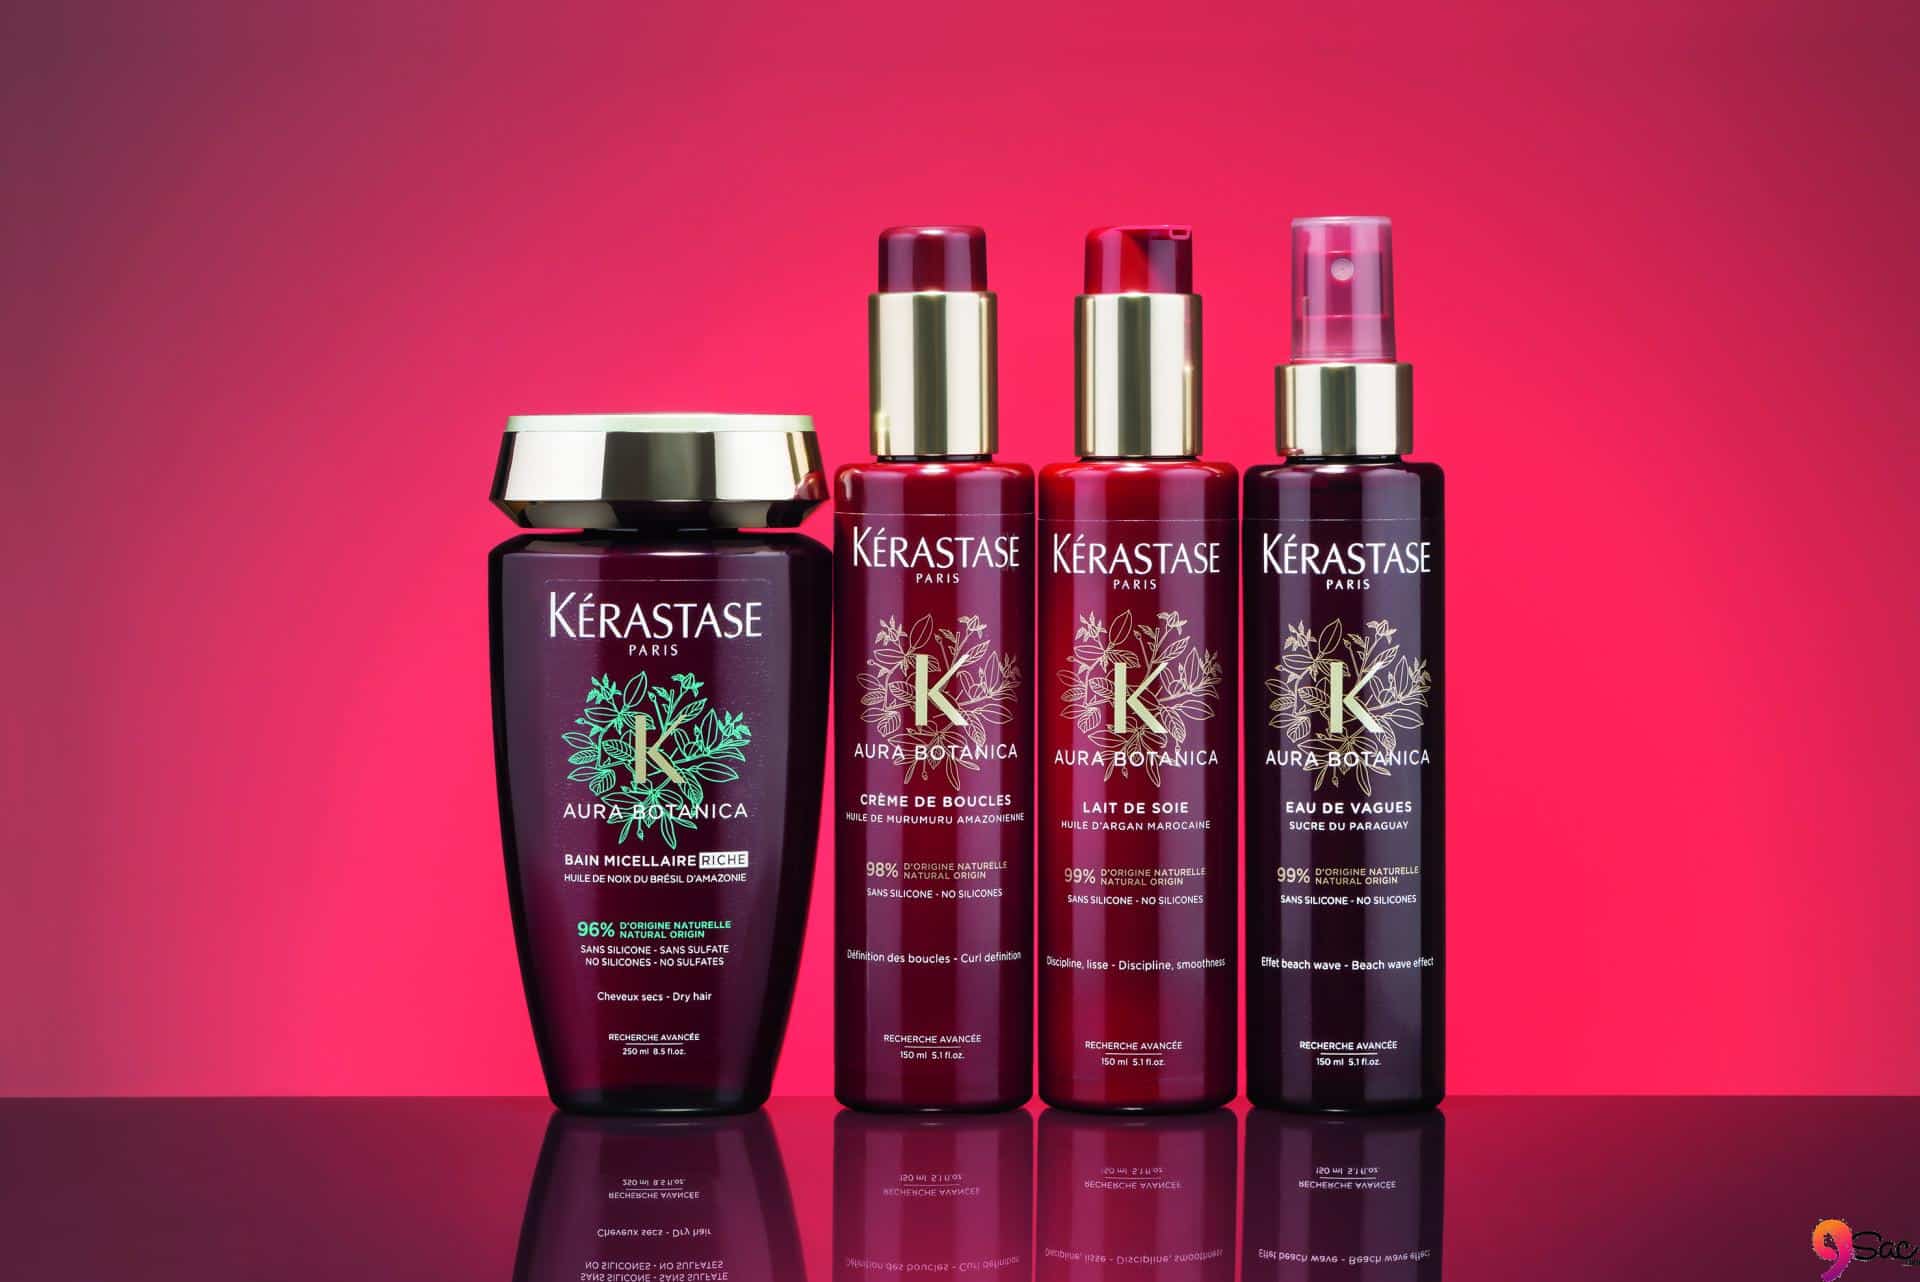 我应该使用哪种Kerastase产品来护理磨损的头发？